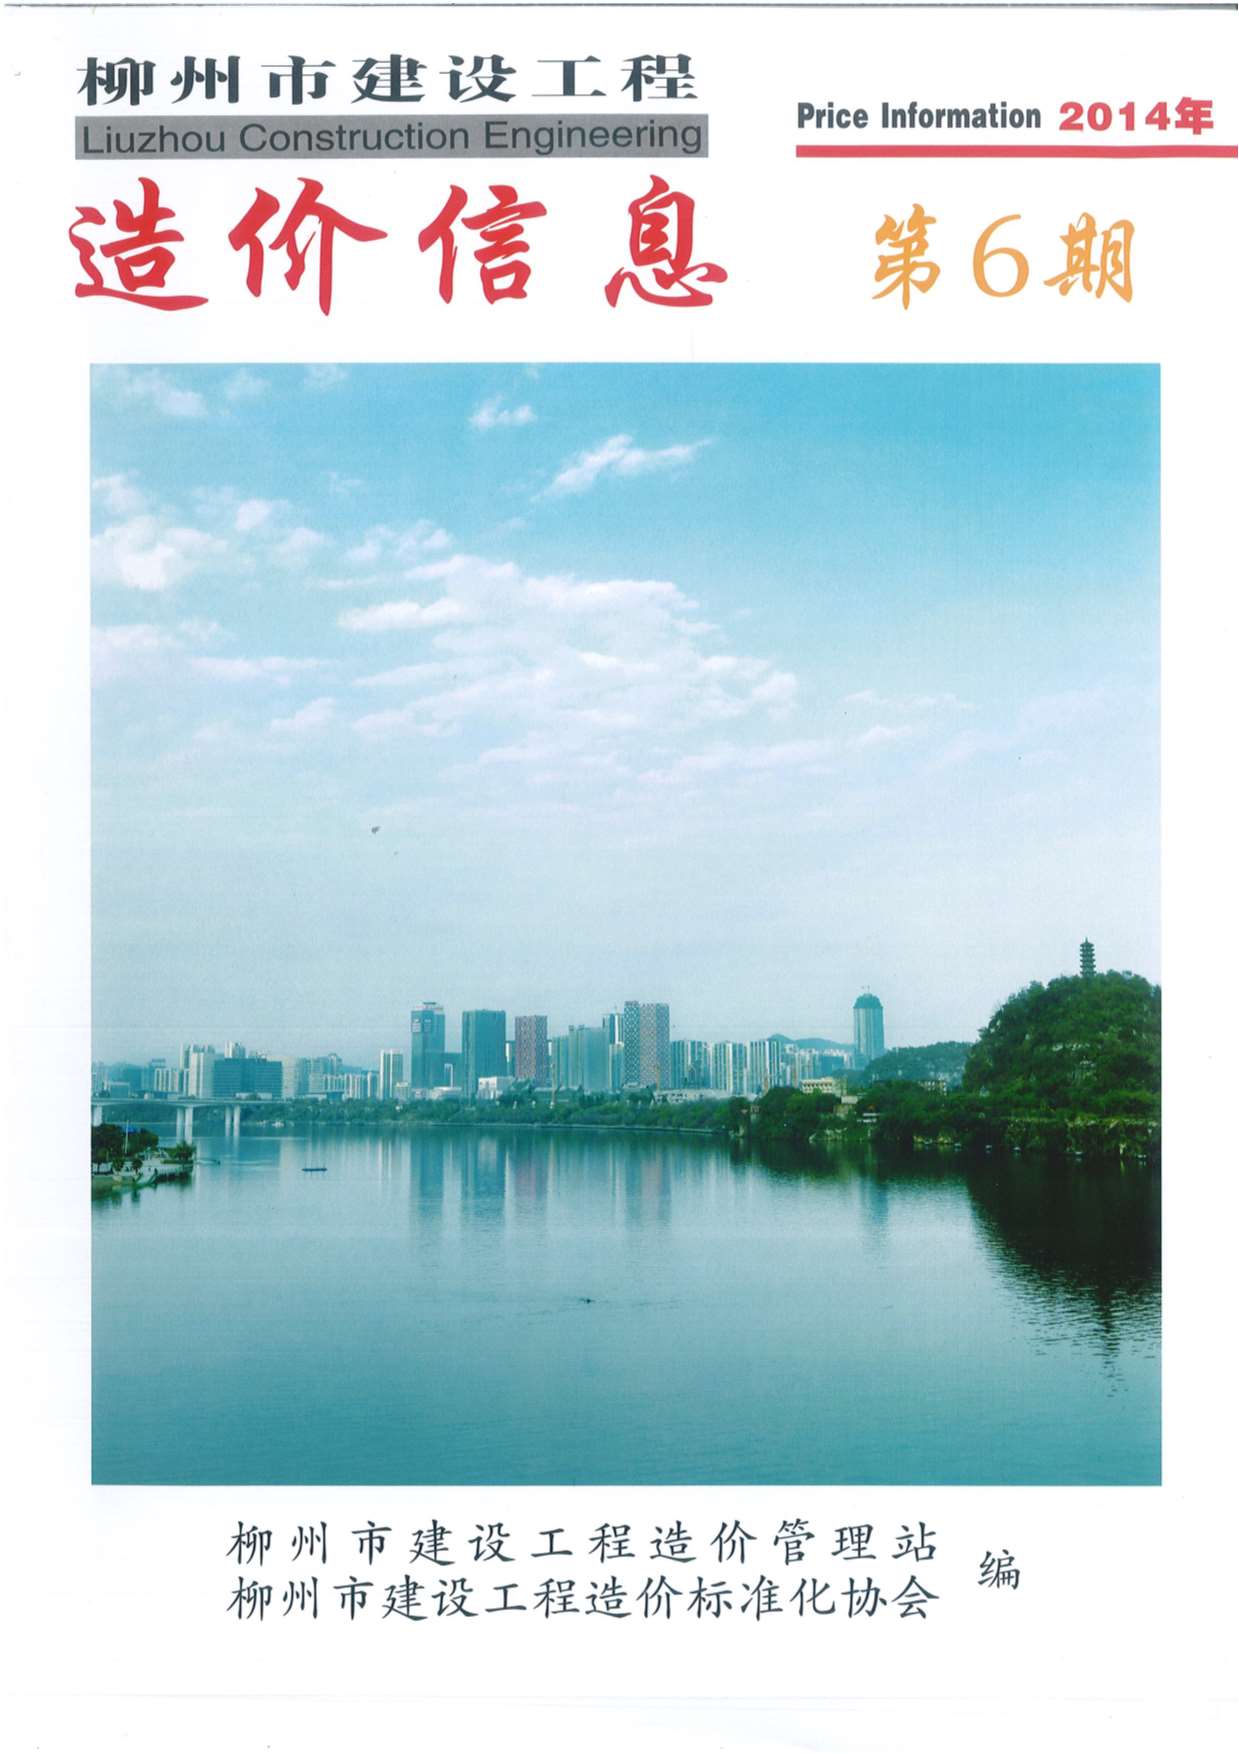 柳州市2014年6月信息价工程信息价_柳州市信息价期刊PDF扫描件电子版